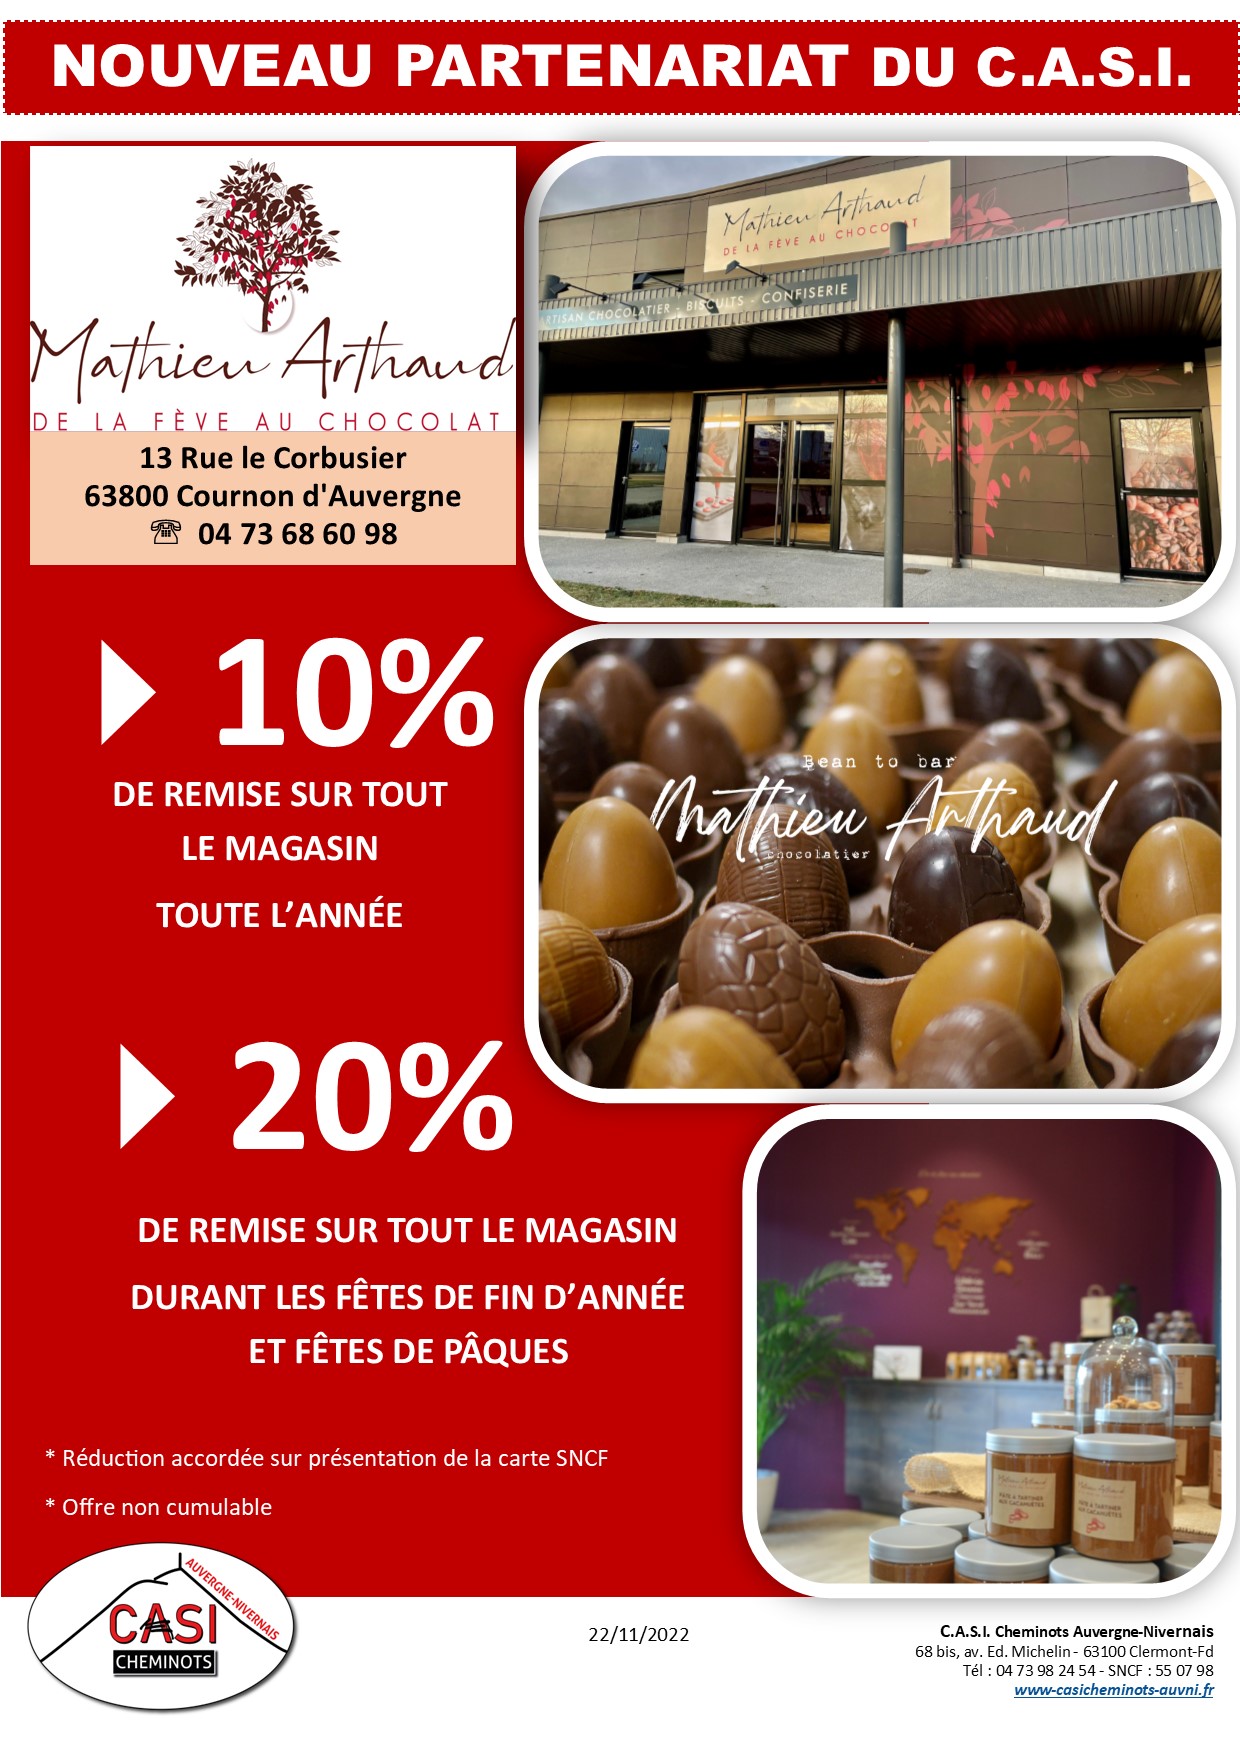 2022 Affiche Partenariat M Arthaud chocolatier